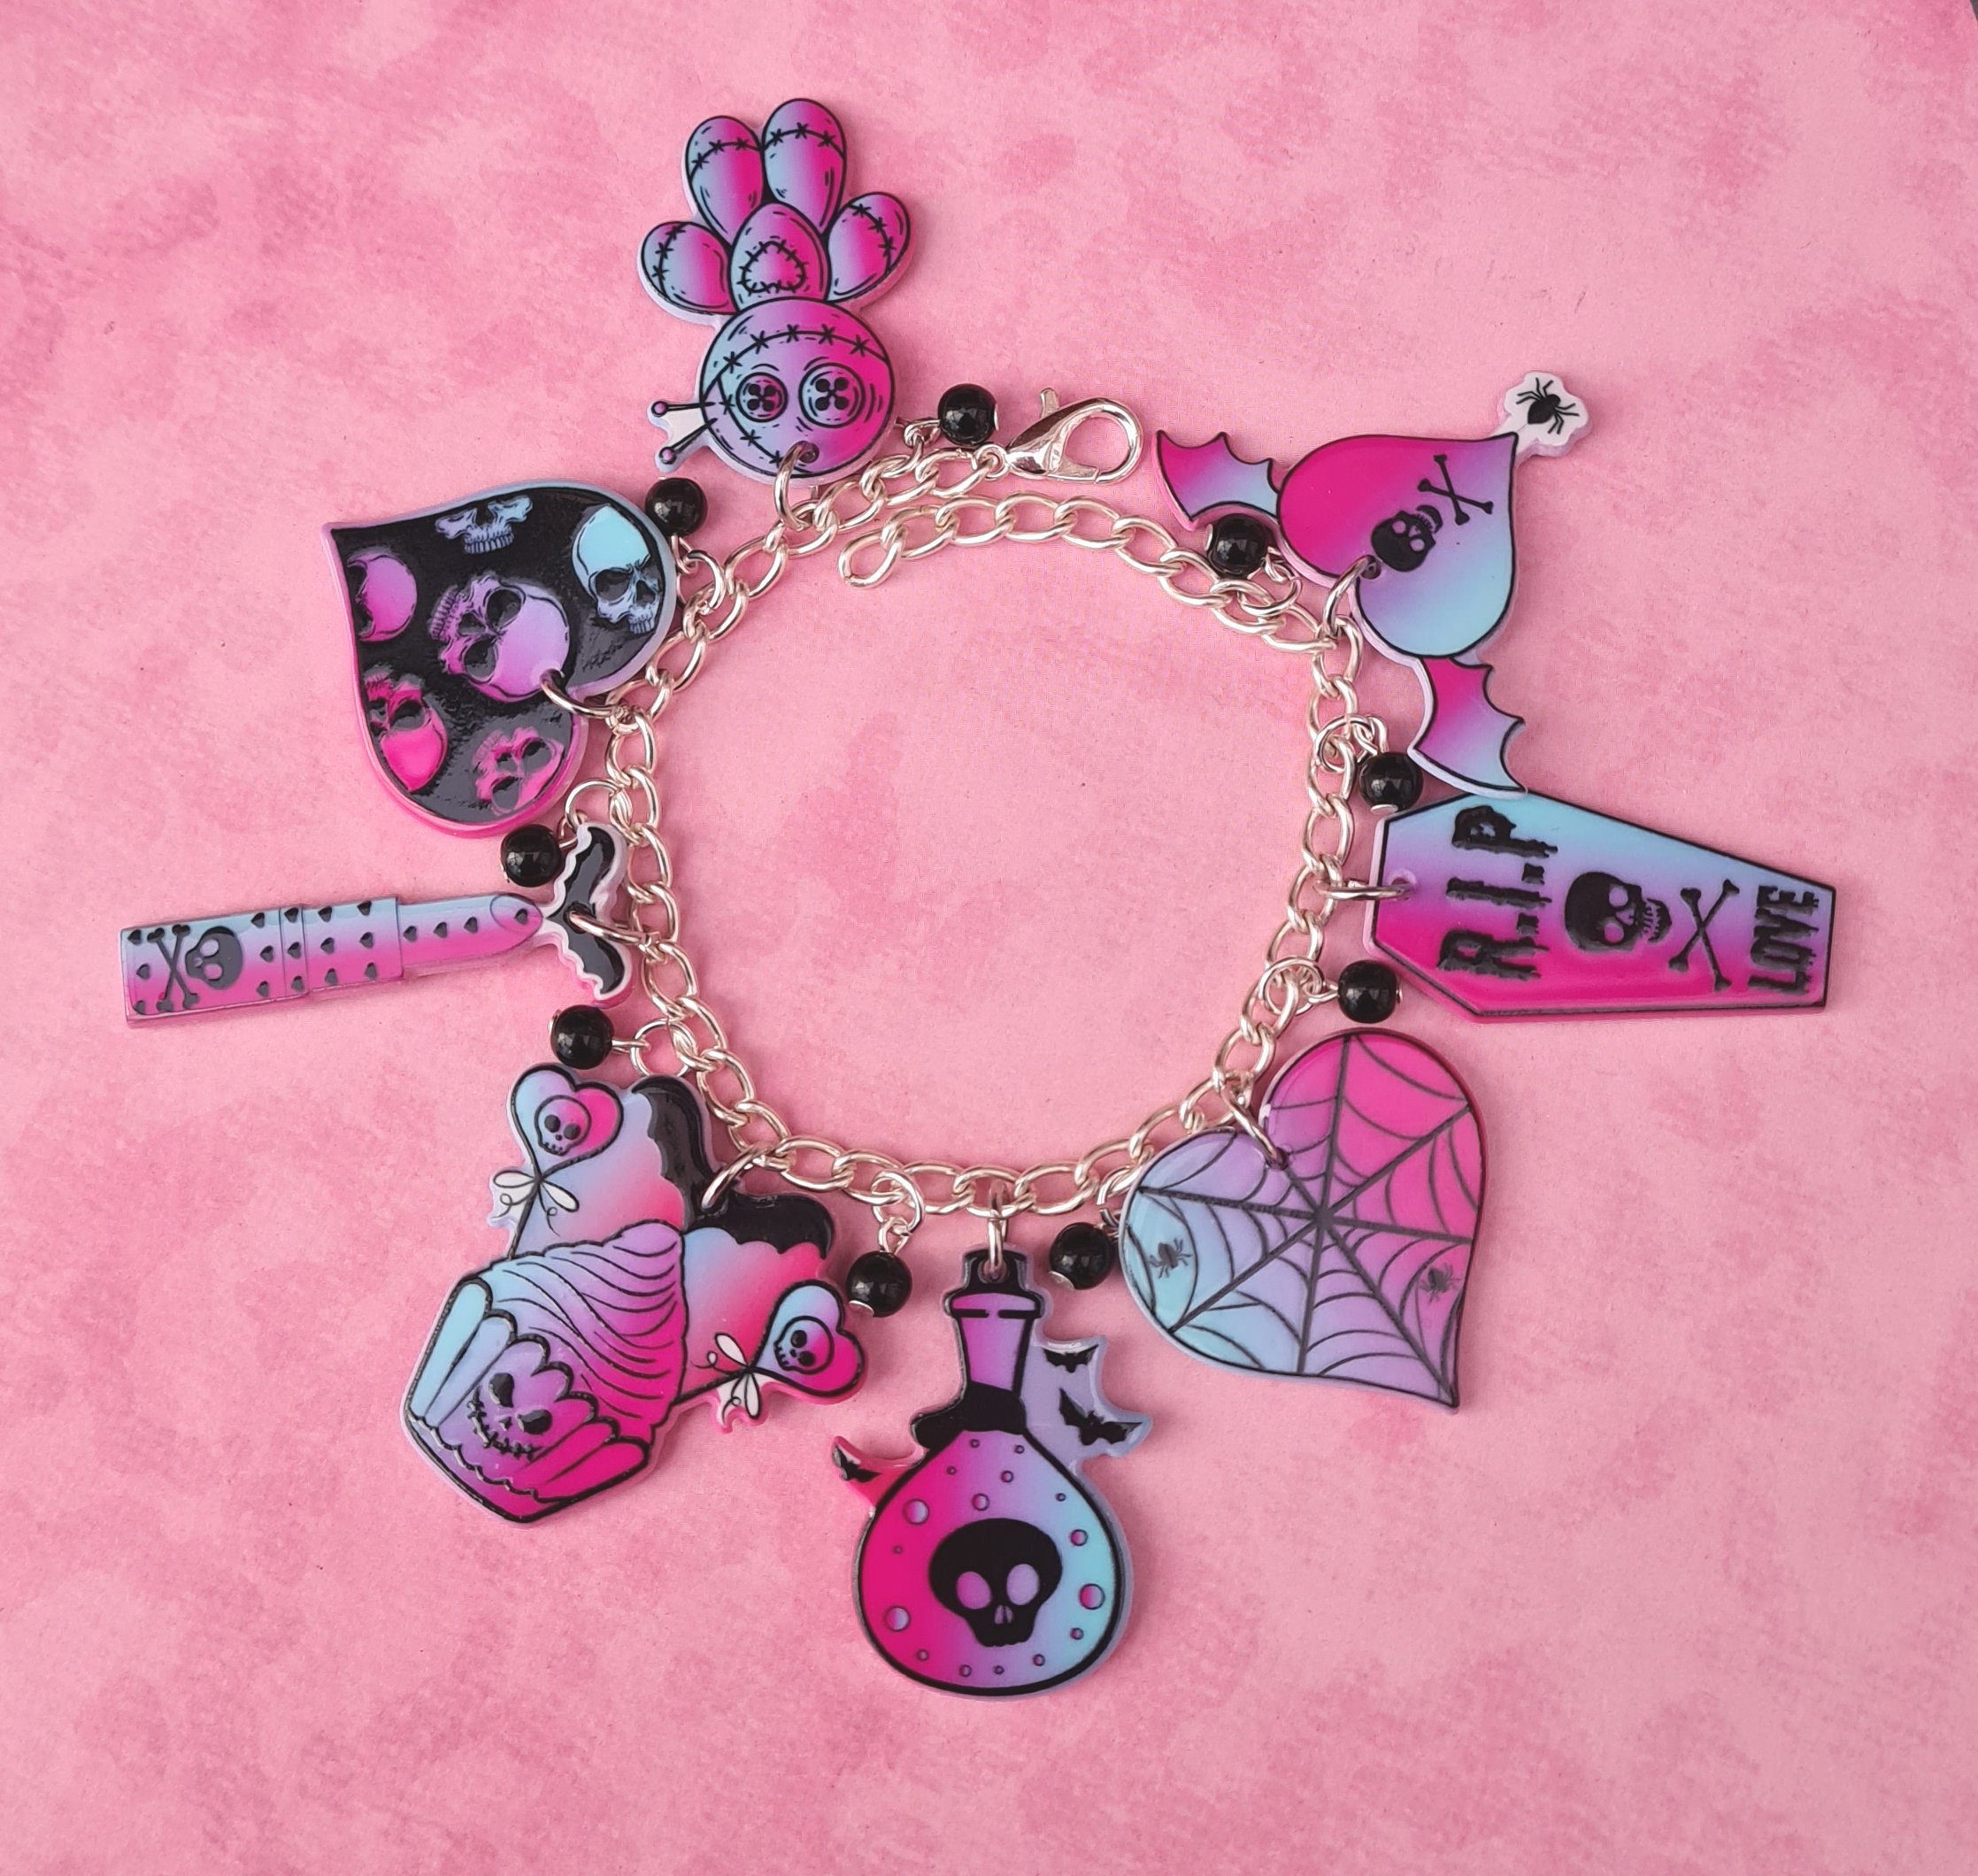 Spooky Gothic Charm Bracelet – Biohazard Candy